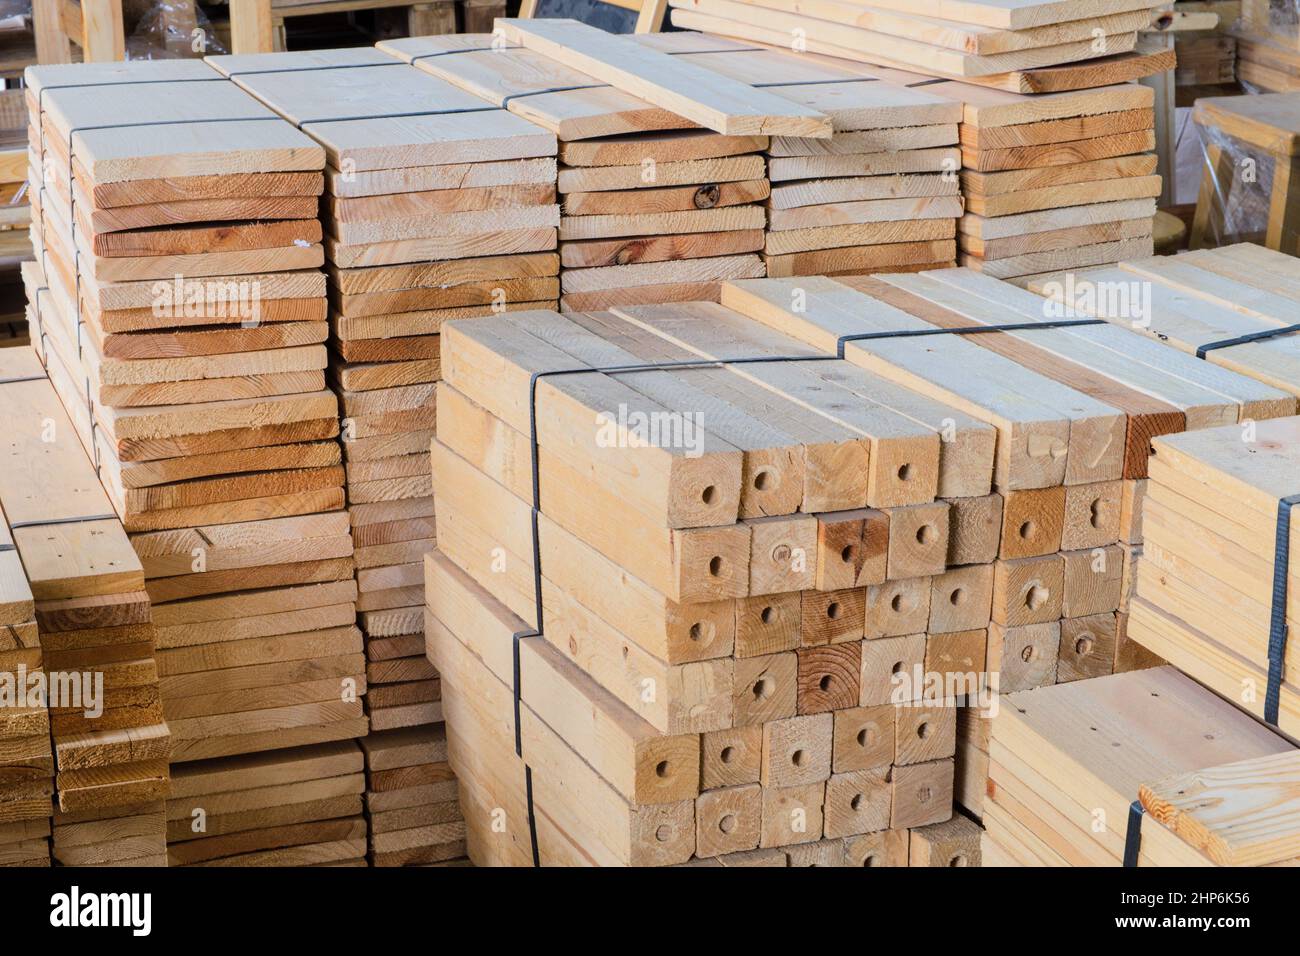 Industrie transformation du bois (bois de chamcha) matériel dans un magasin d'entrepôt pour utilisation sur faire un mobilier pour la décoration maison et bureau Banque D'Images